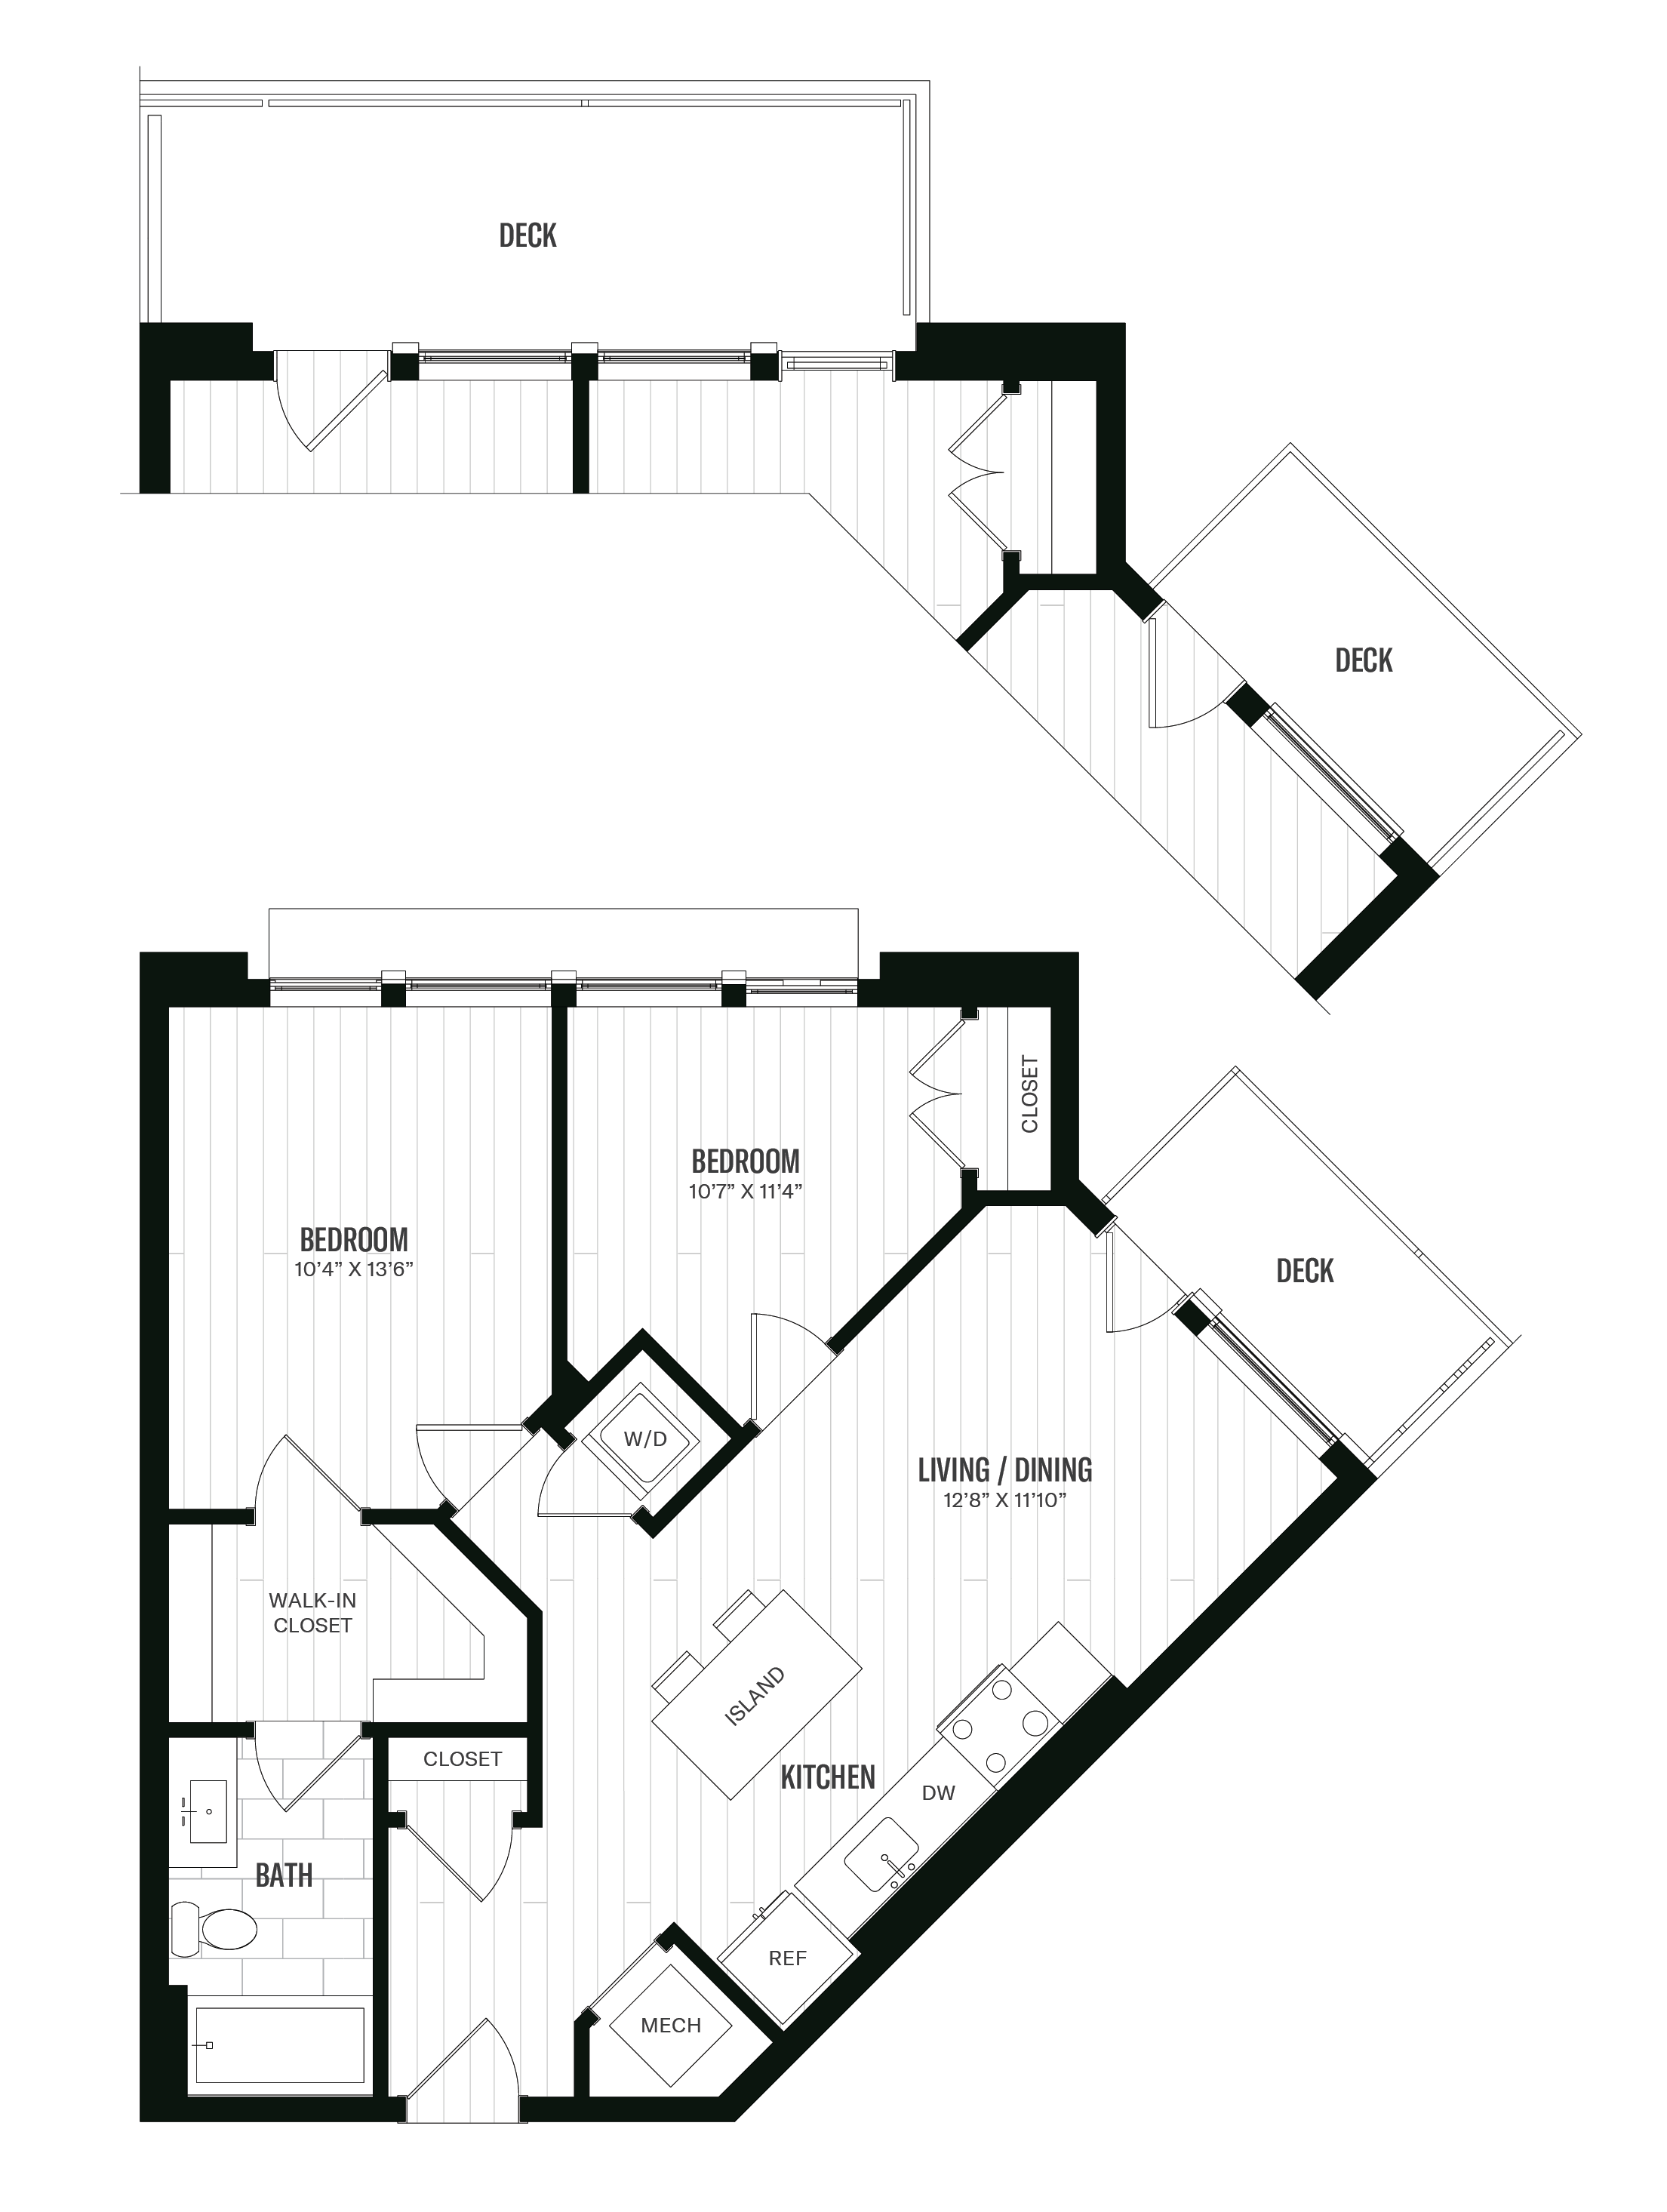 Floorplan image of unit 316